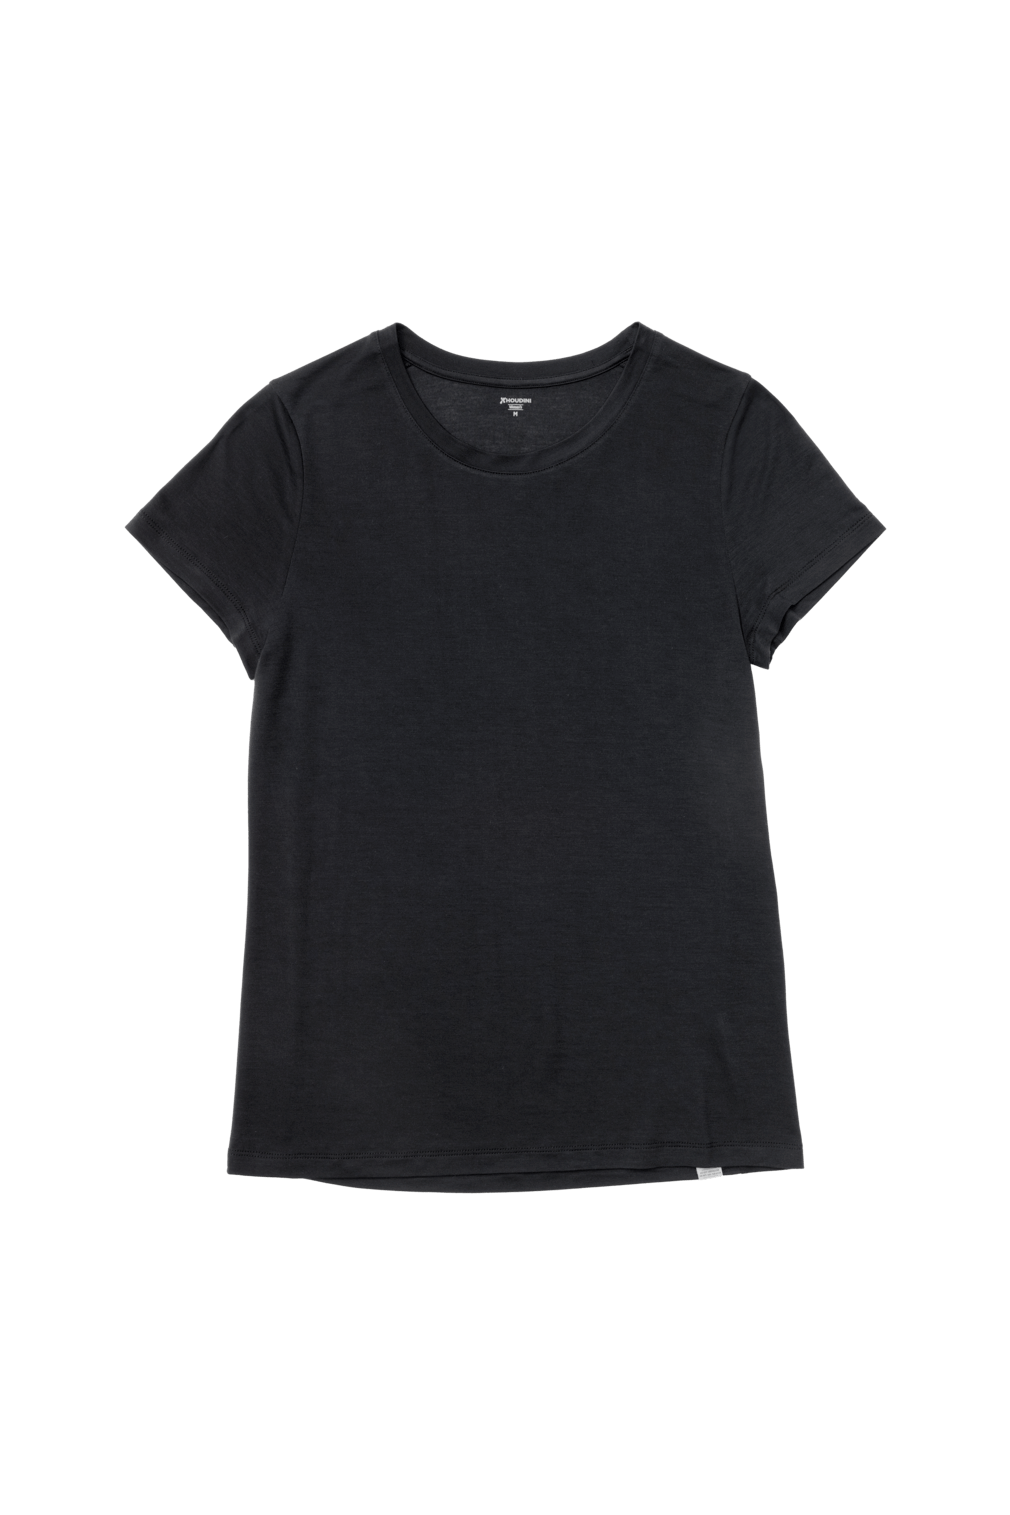 Houdini Women's Tree Tee - 100% Tencel – Weekendbee - sustainable sportswear